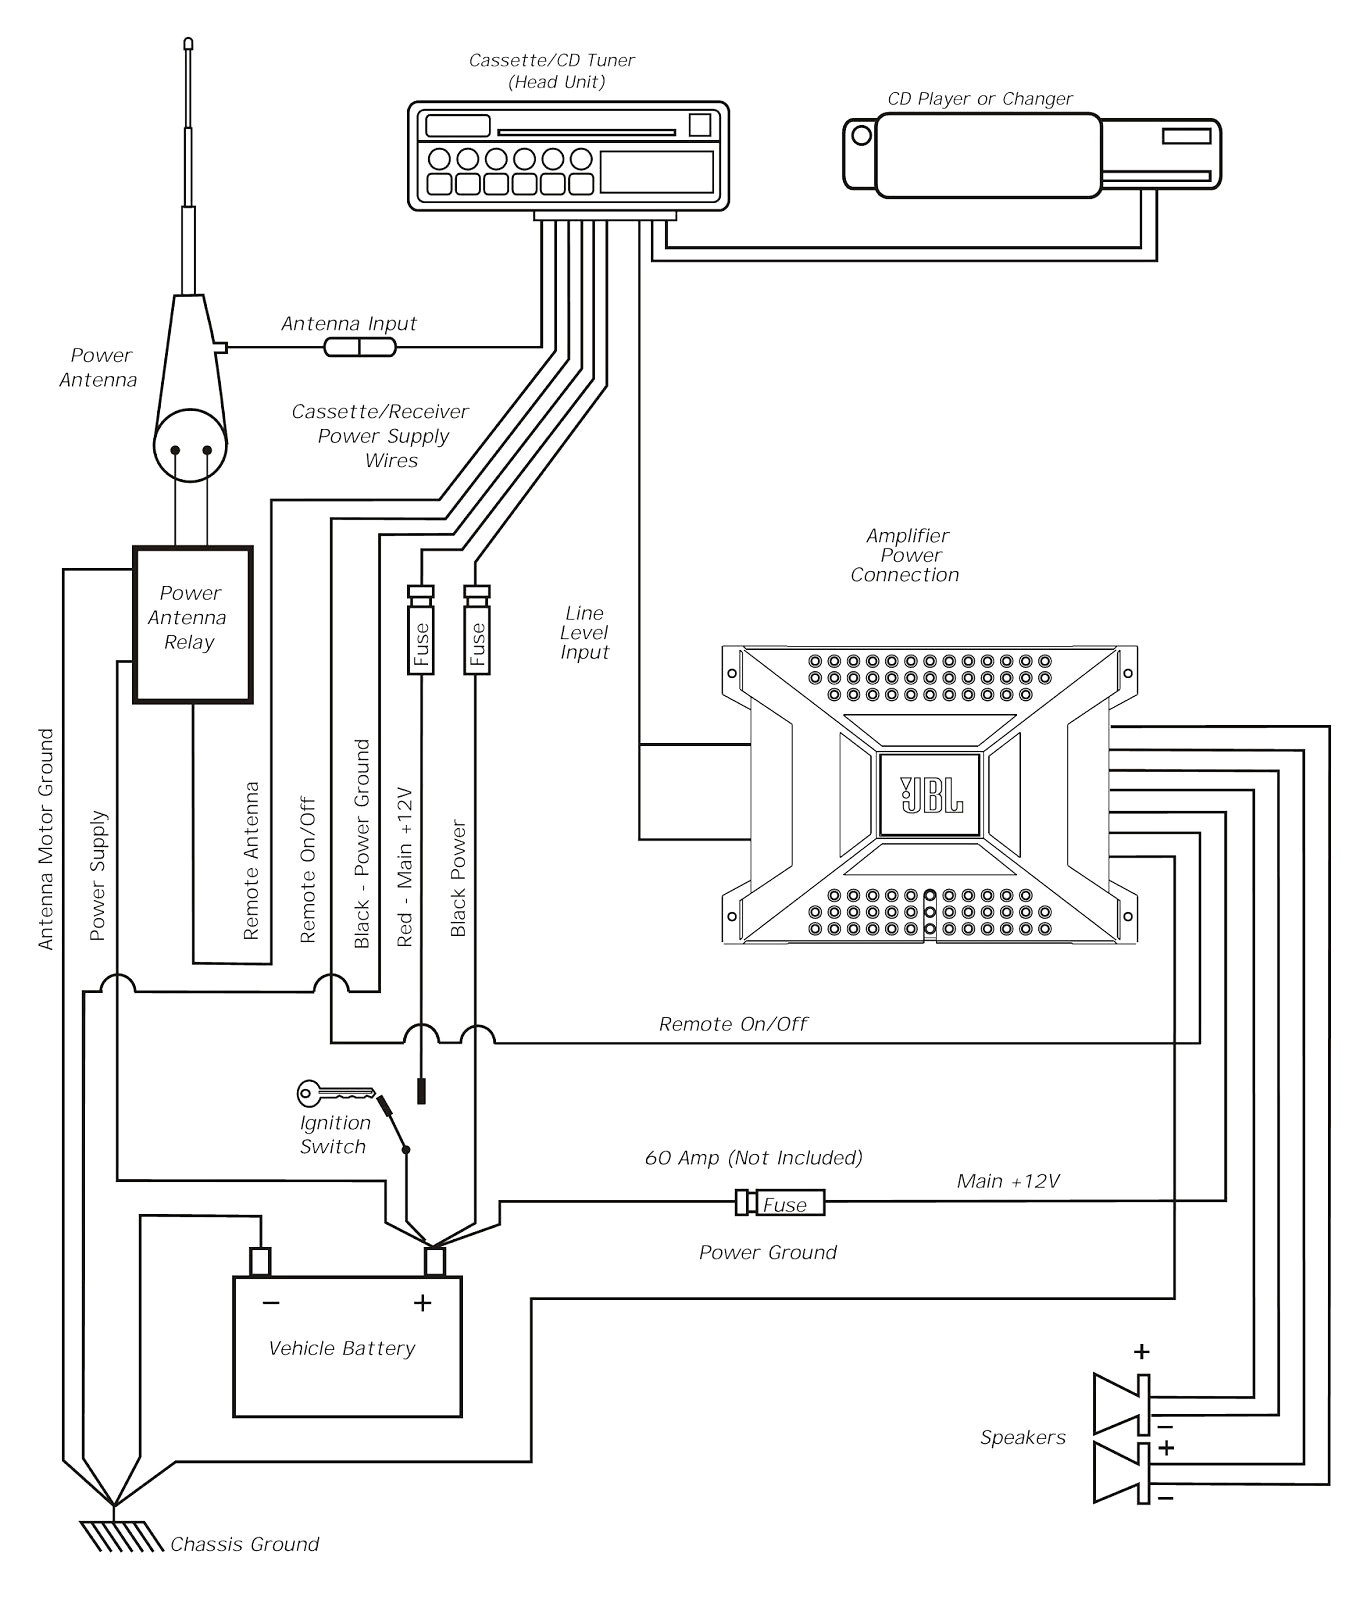 bt phone wiring diagram beautiful pioneer fh x720bt wiring diagram book pioneer fh x720bt wiring jpg